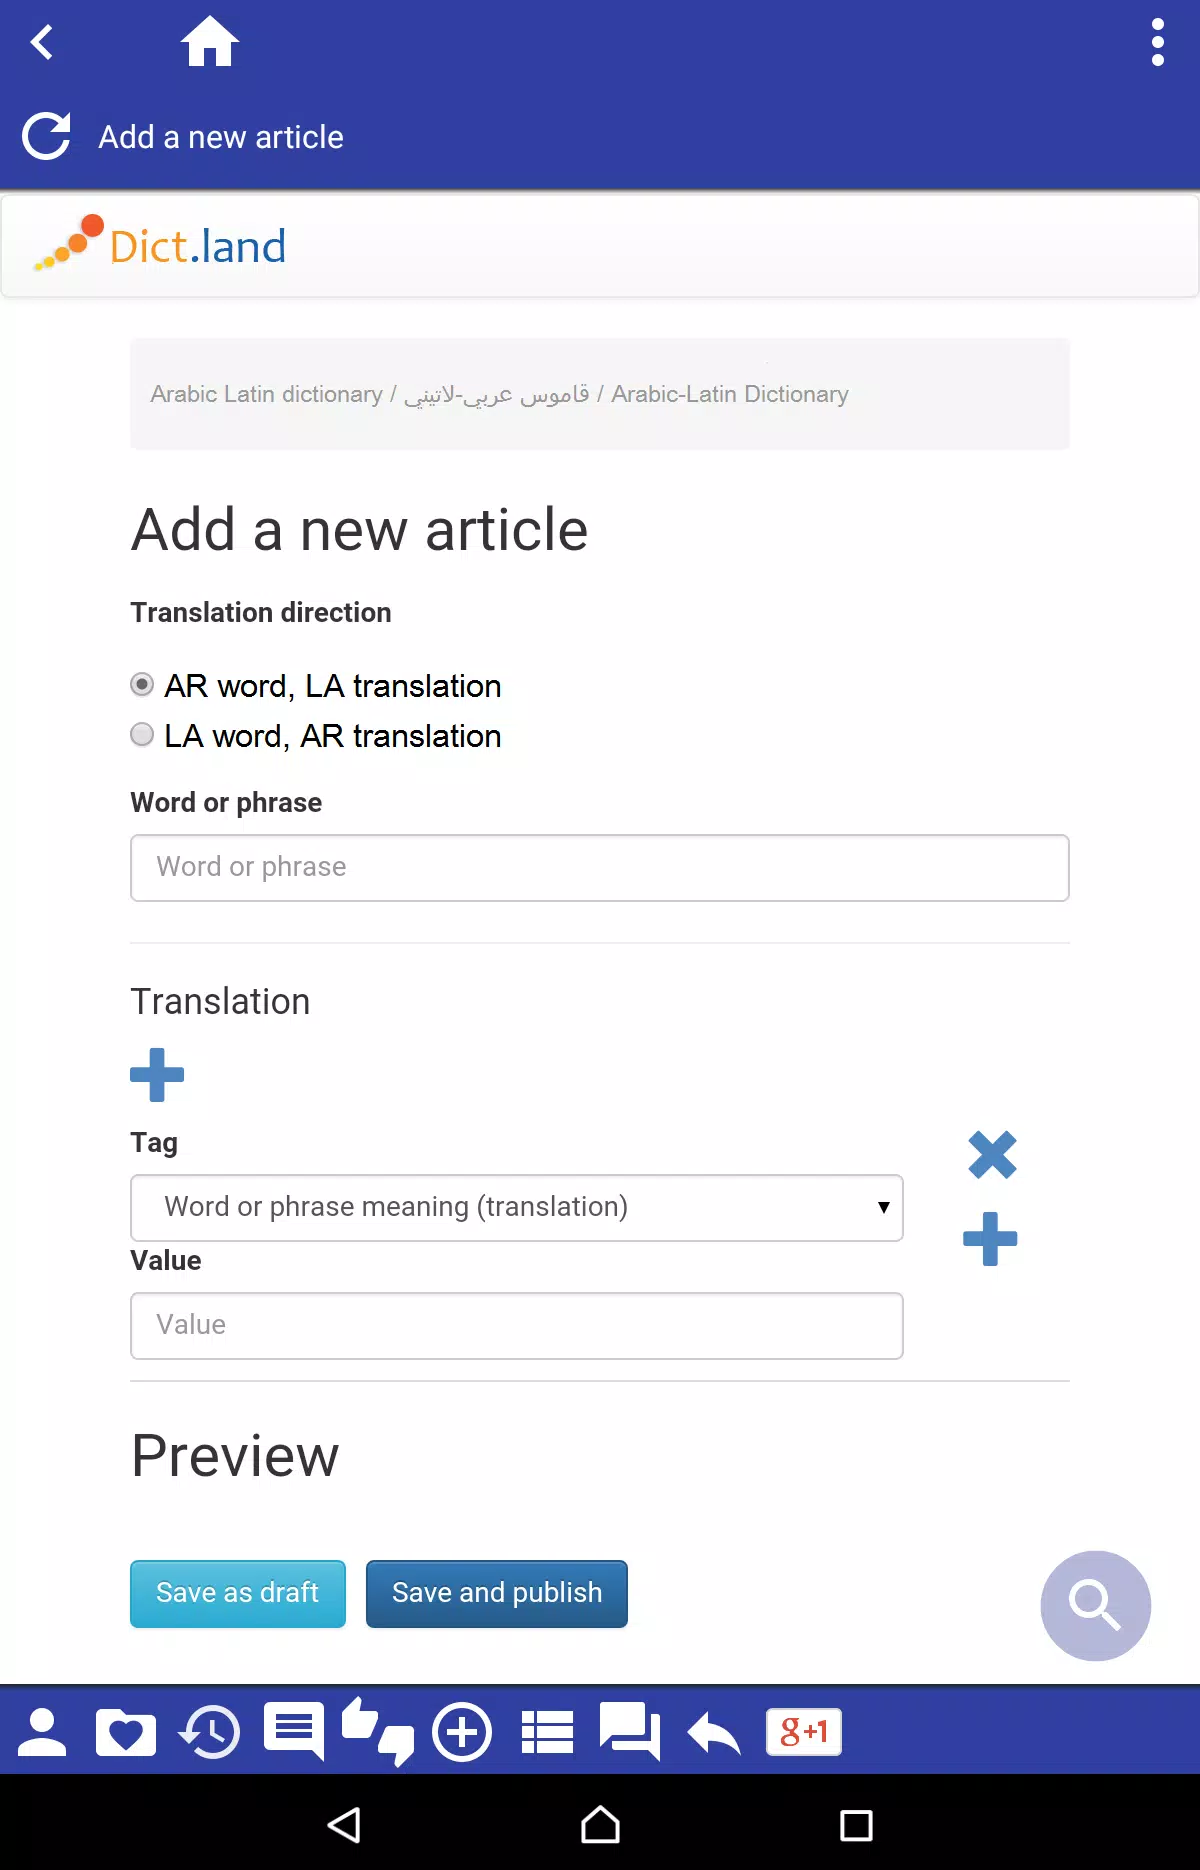 الصفحة معتدل فقاعة  قاموس عربي-لاتيني for Android - APK Download